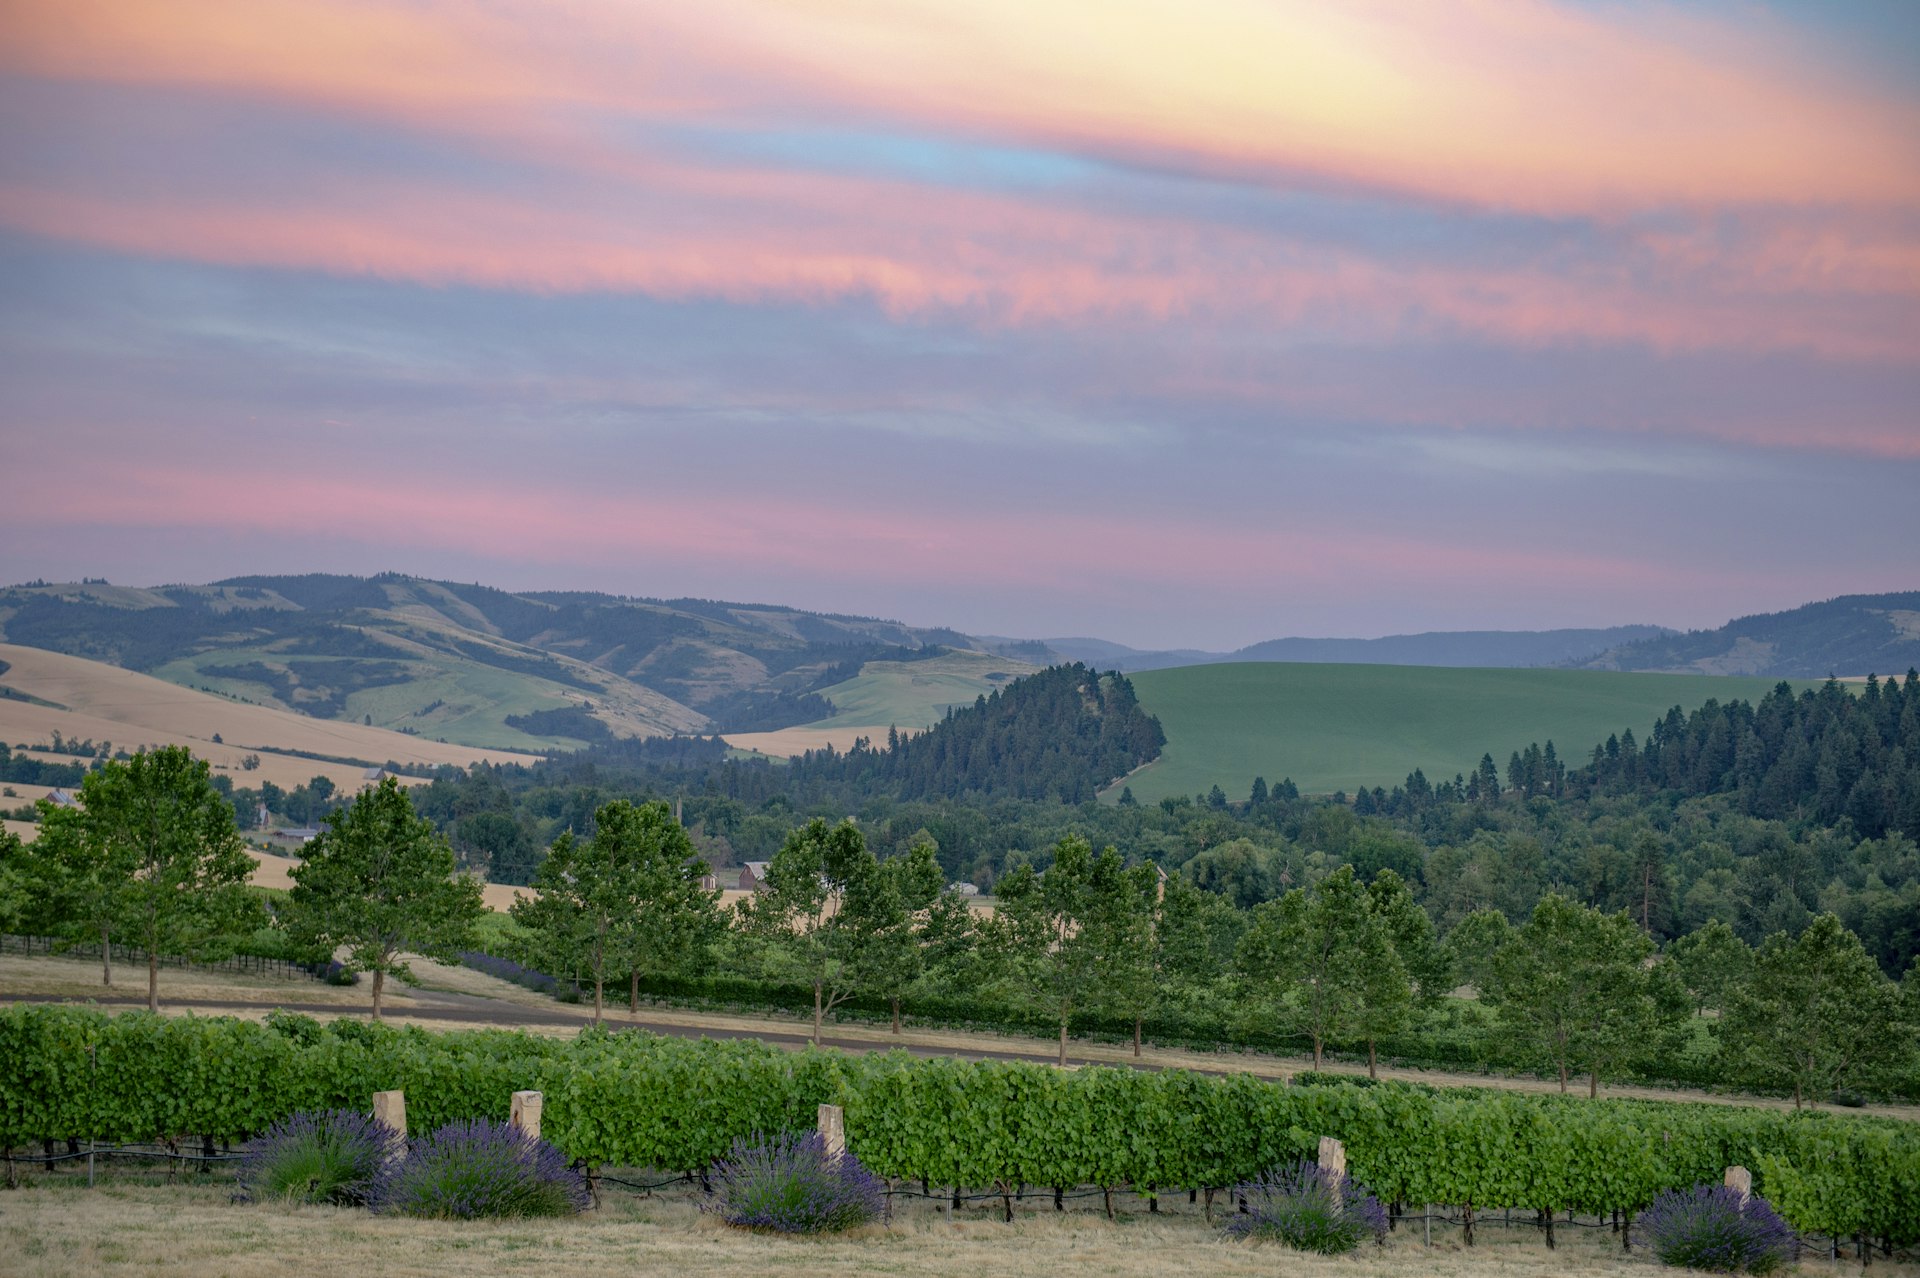 A view of vineyards at sunset north of Walla Walla, Washington, USA